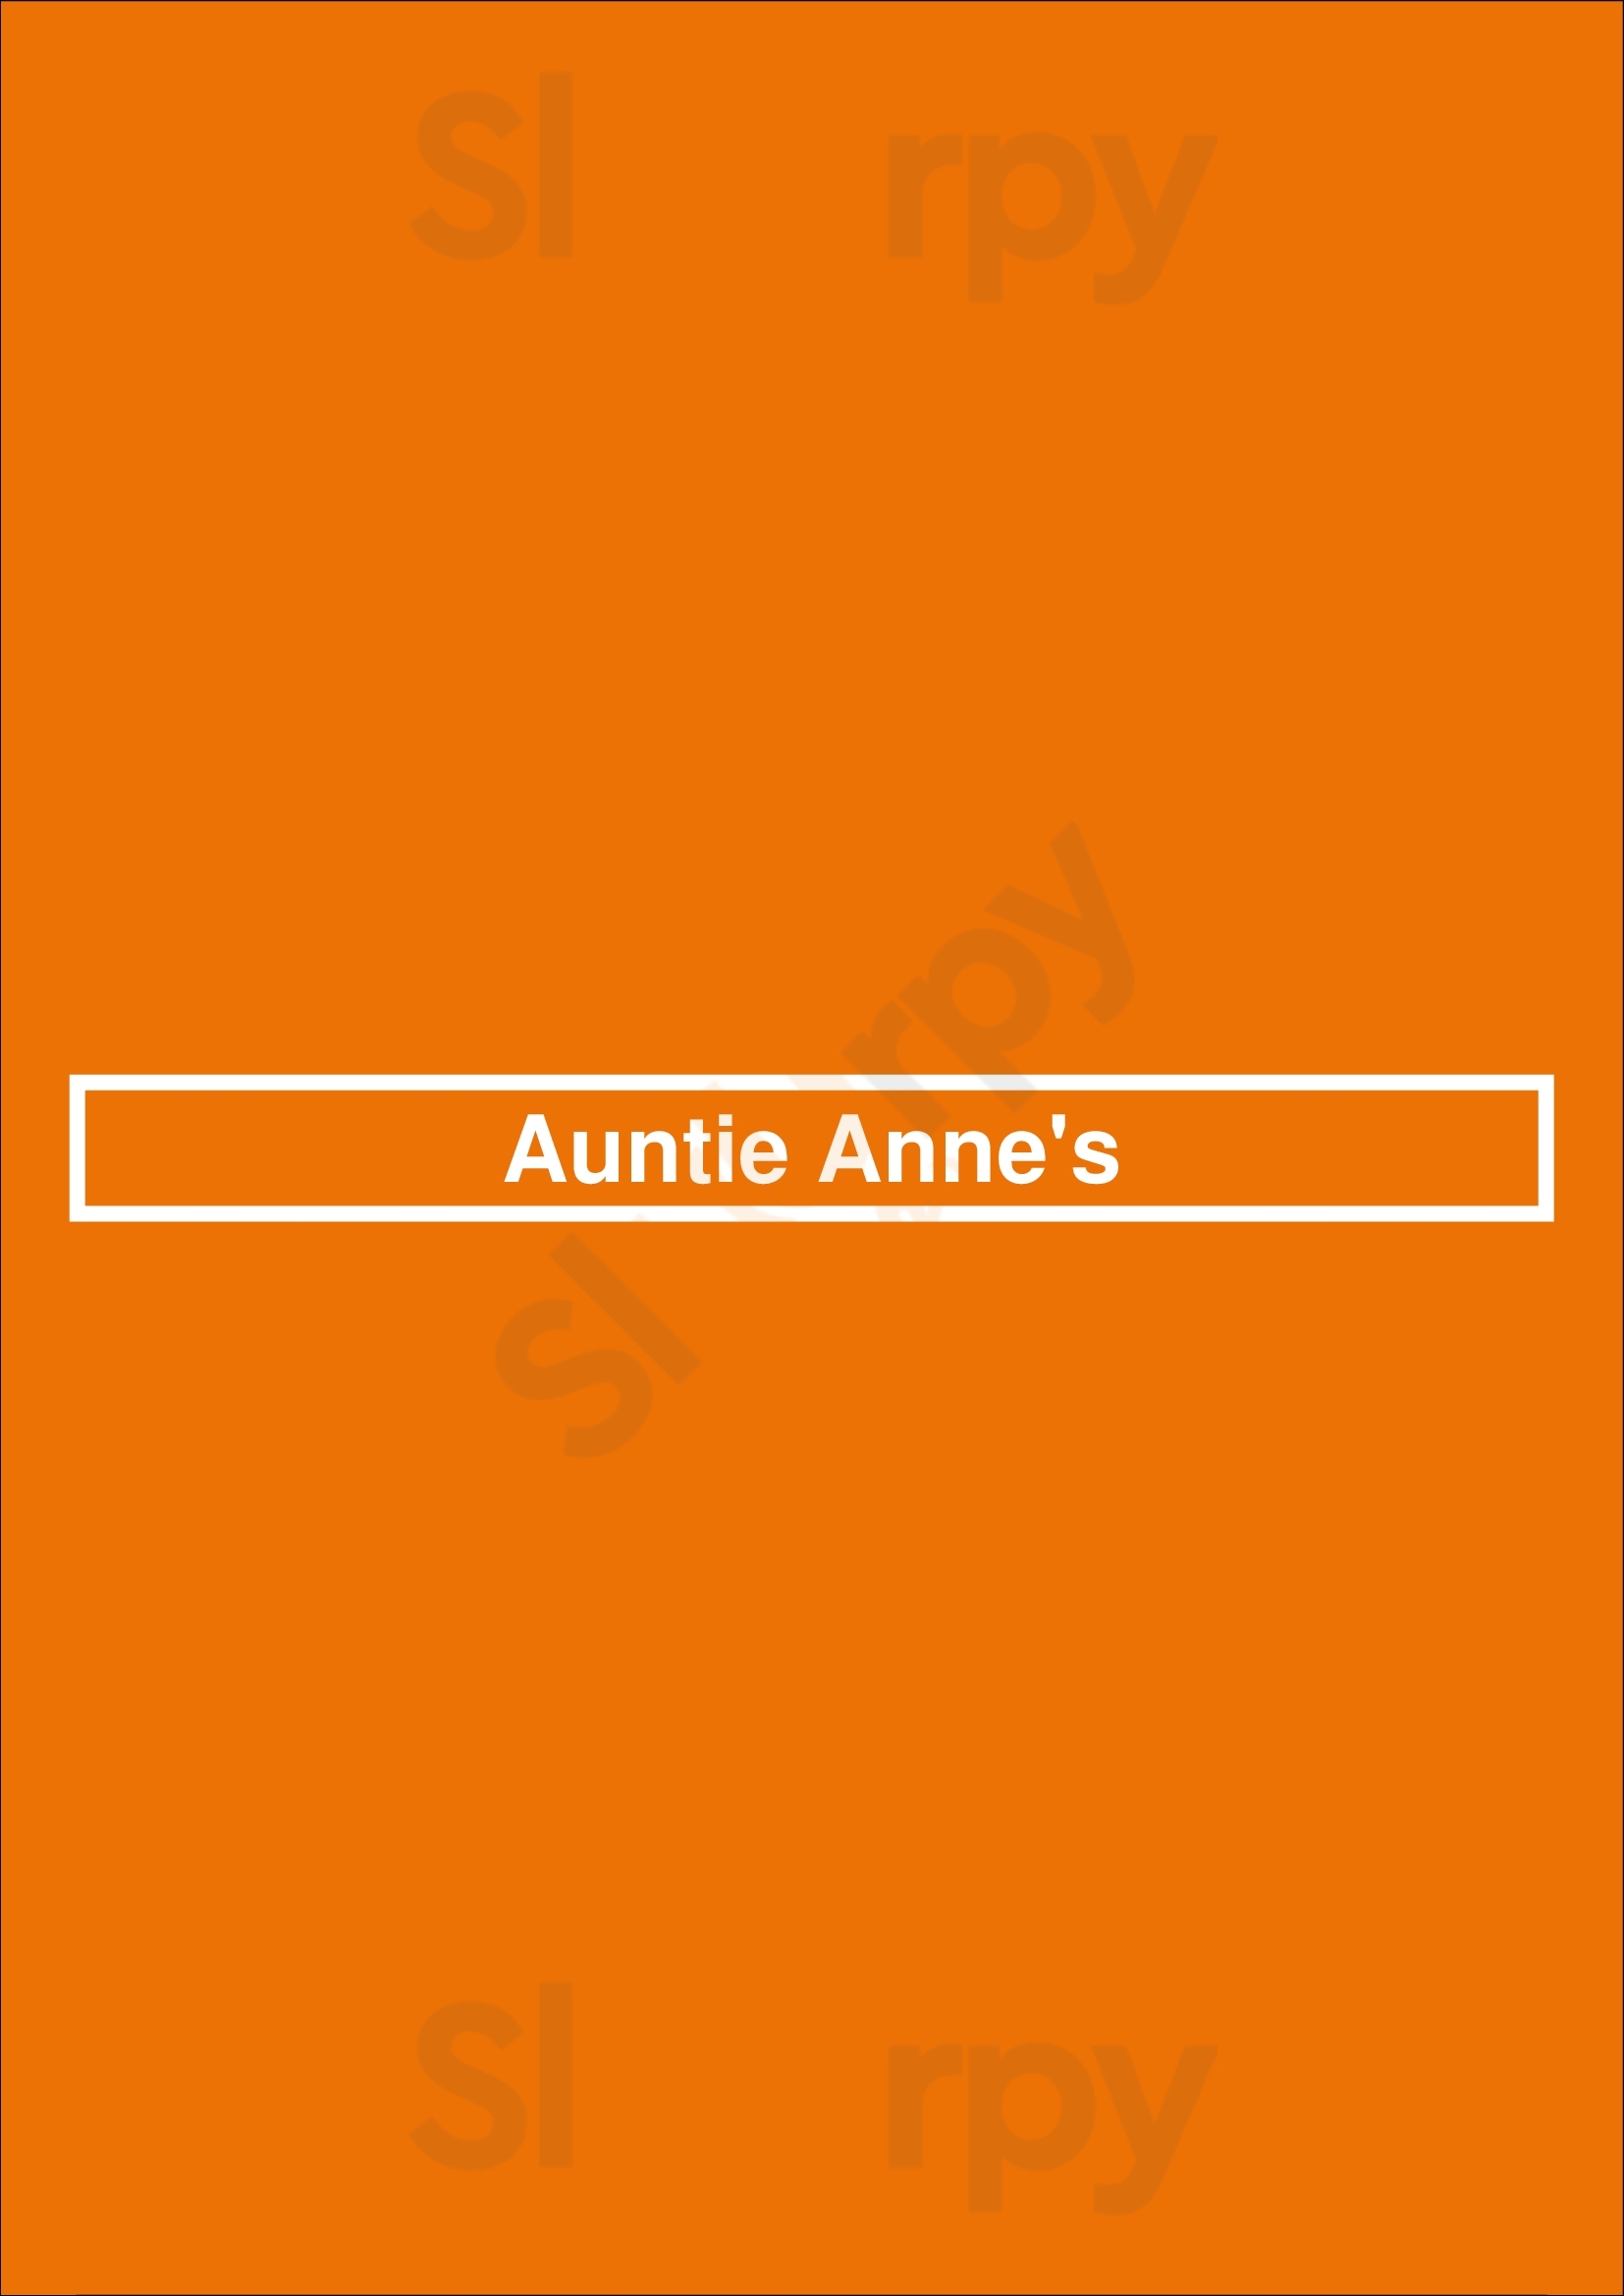 Auntie Anne's Camp Hill Menu - 1